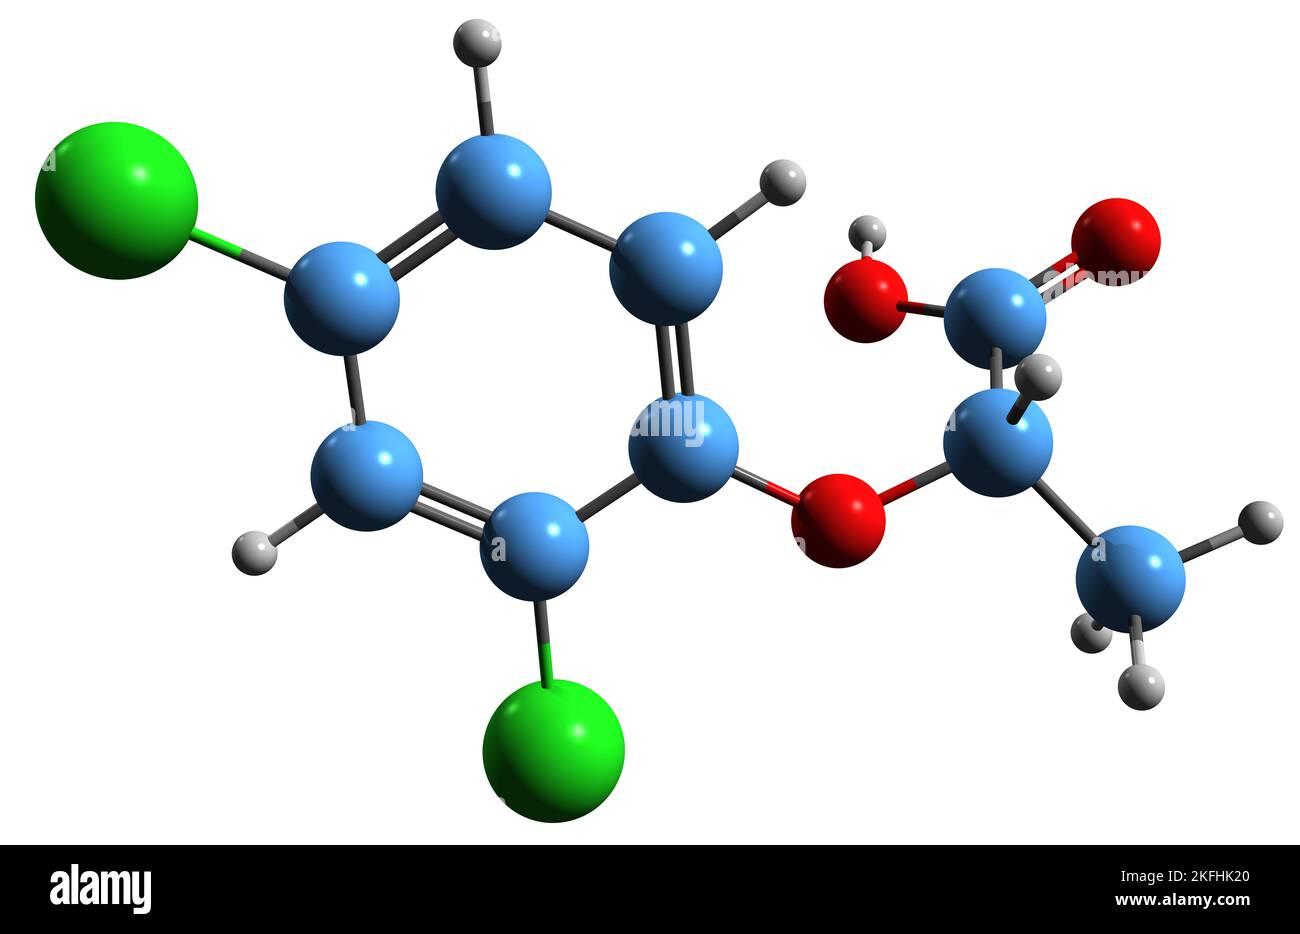 3D Bild der Dichlorprop-Skelettformel - molekulare chemische Struktur des Chlorophenoxy-Herbizids auf weißem Hintergrund isoliert Stockfoto